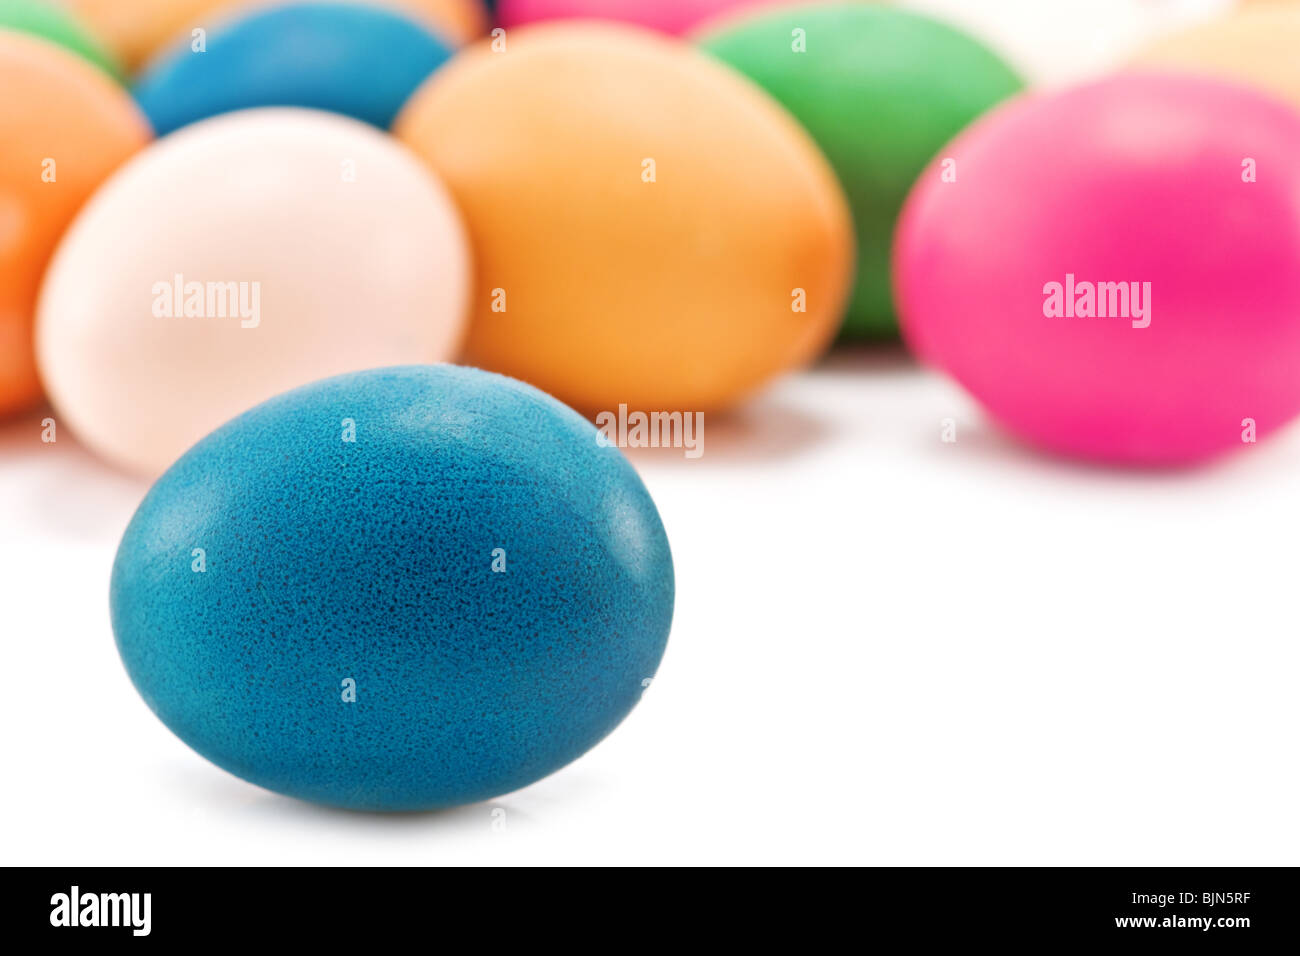 Los huevos de pascua colorido aislado en blanco Foto de stock